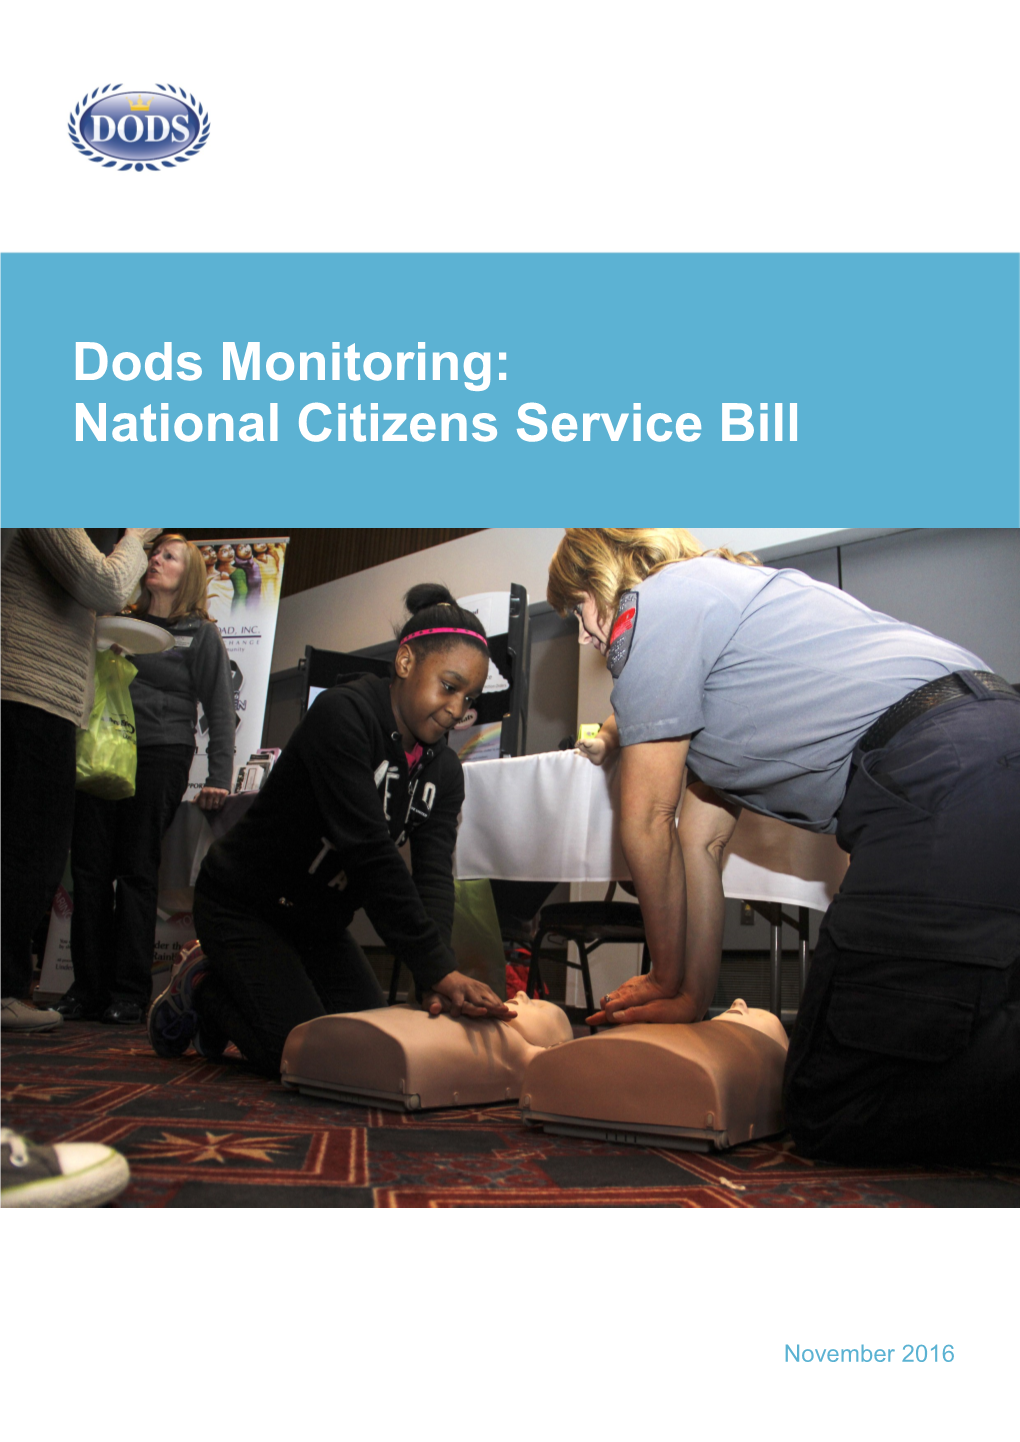 National Citizens Service Bill